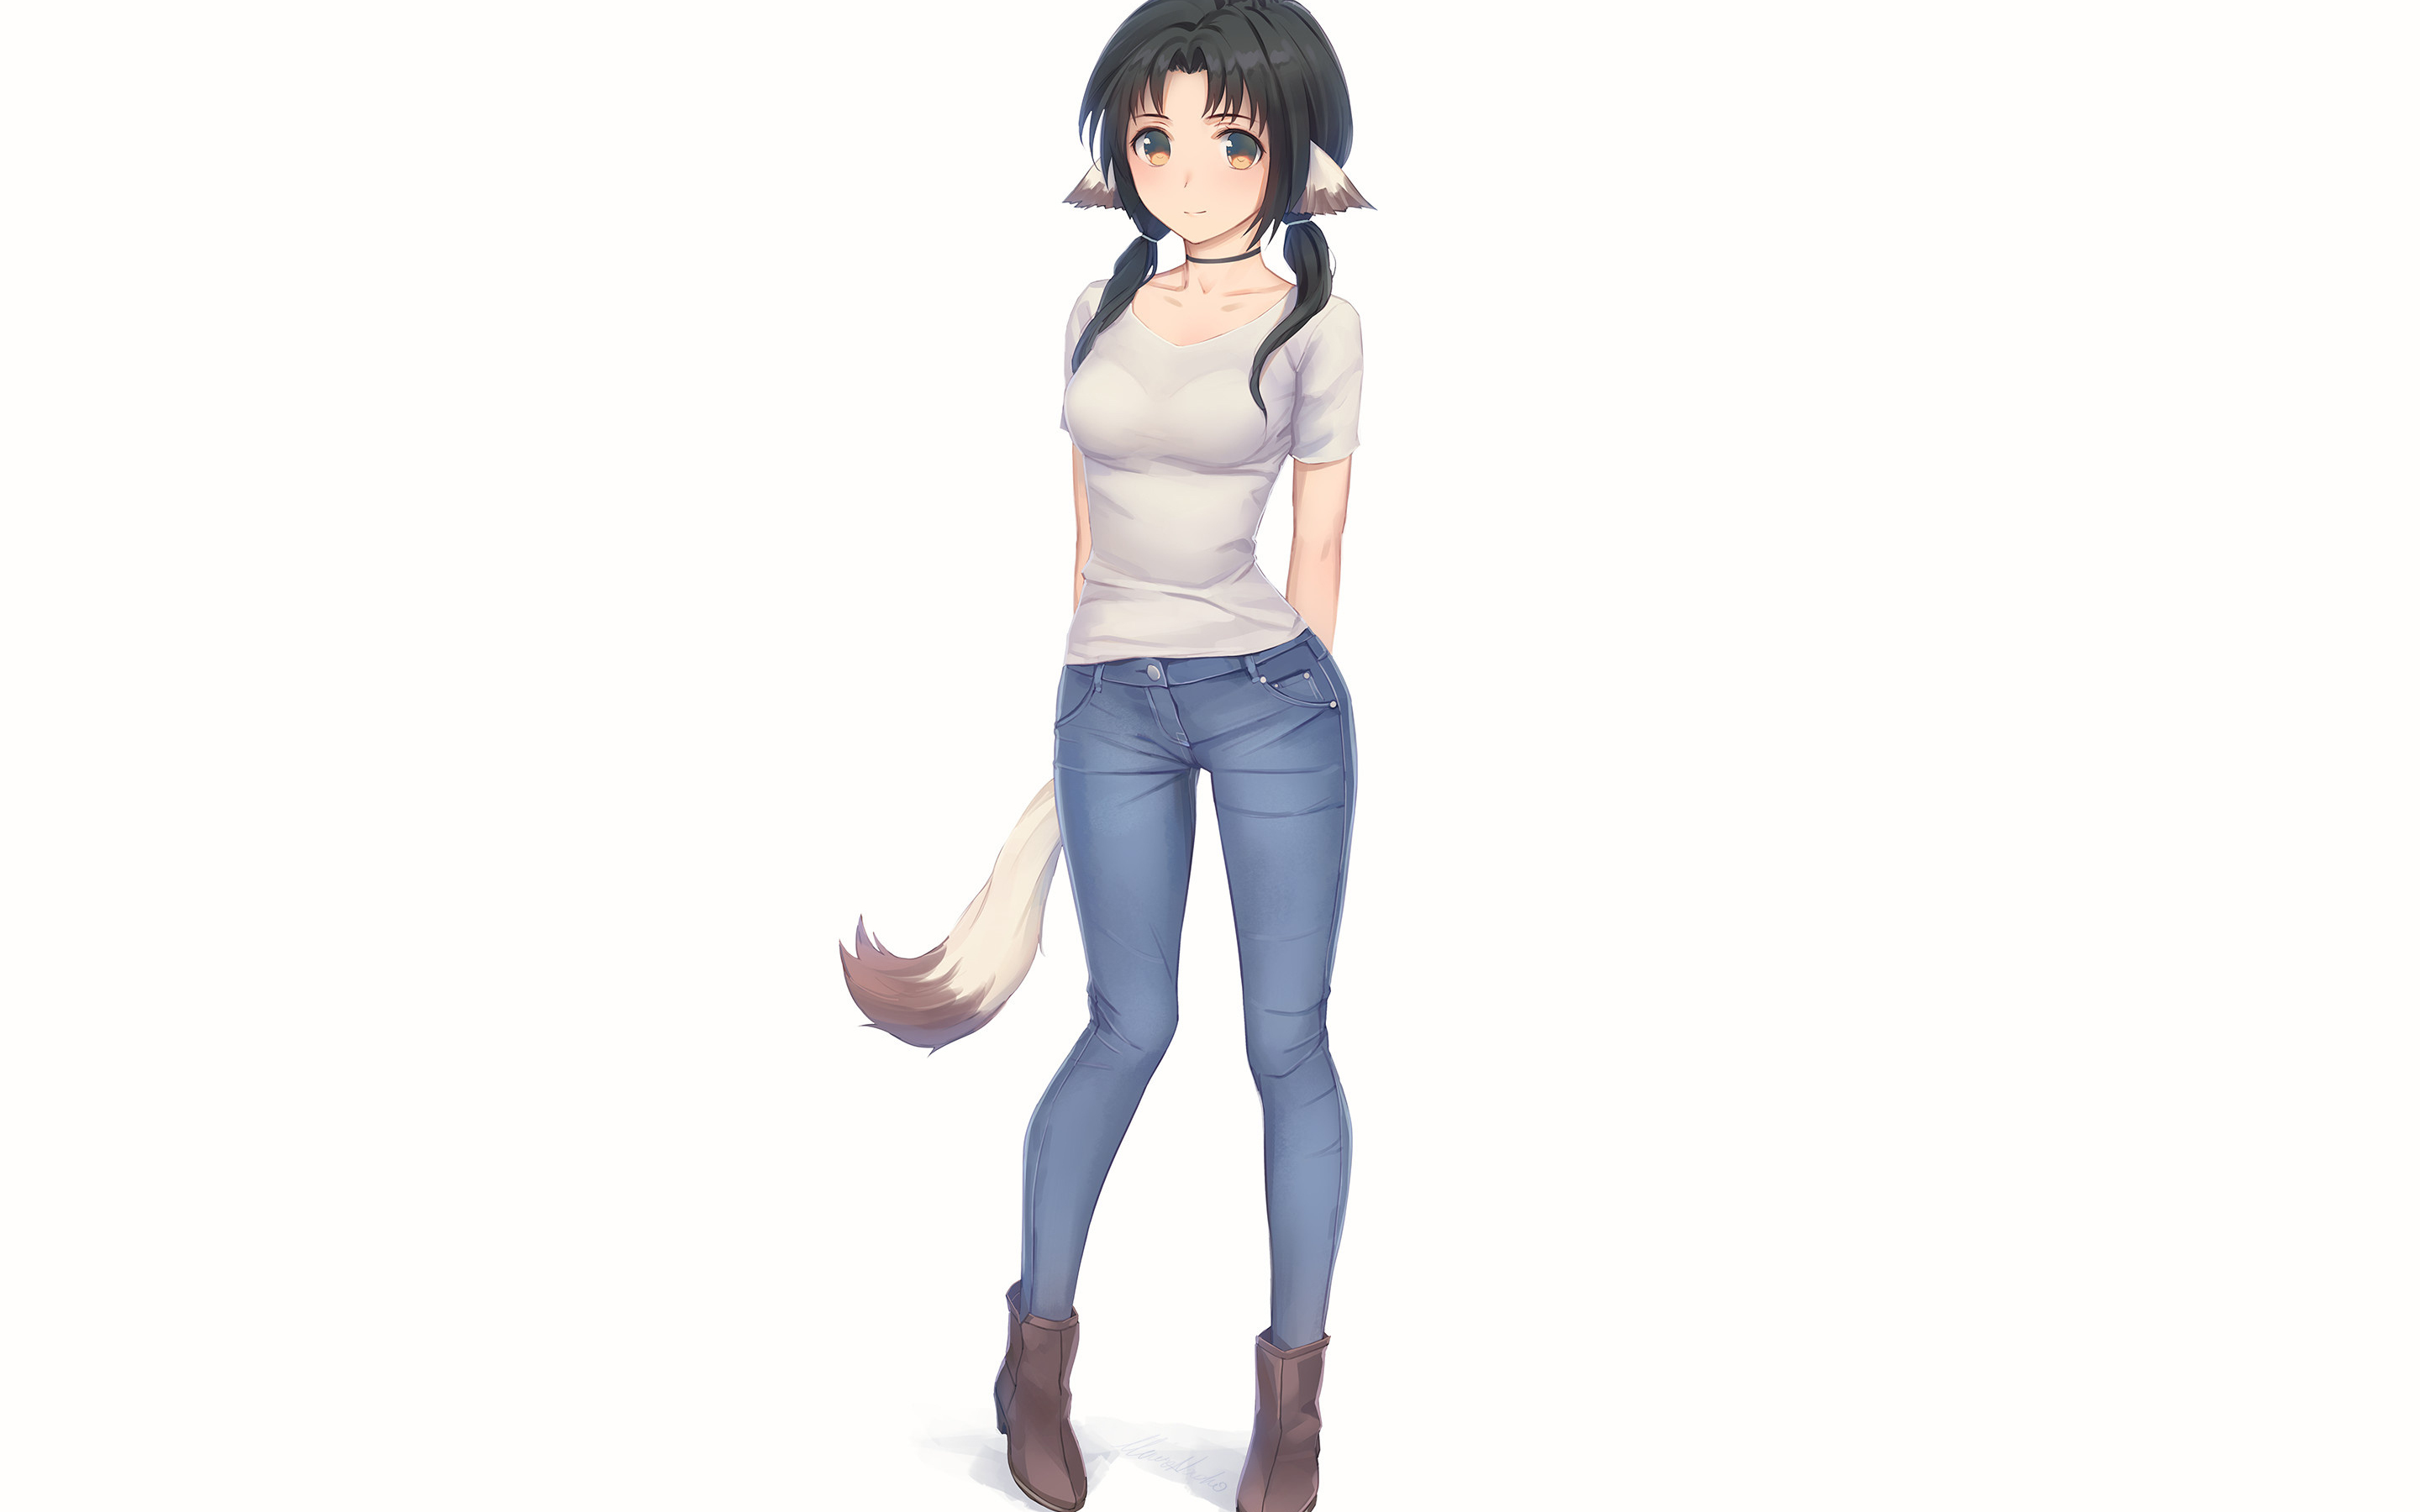 Fox girl, jeans, Eruruu, Utawarerumono, 2880x1800 wallpaper